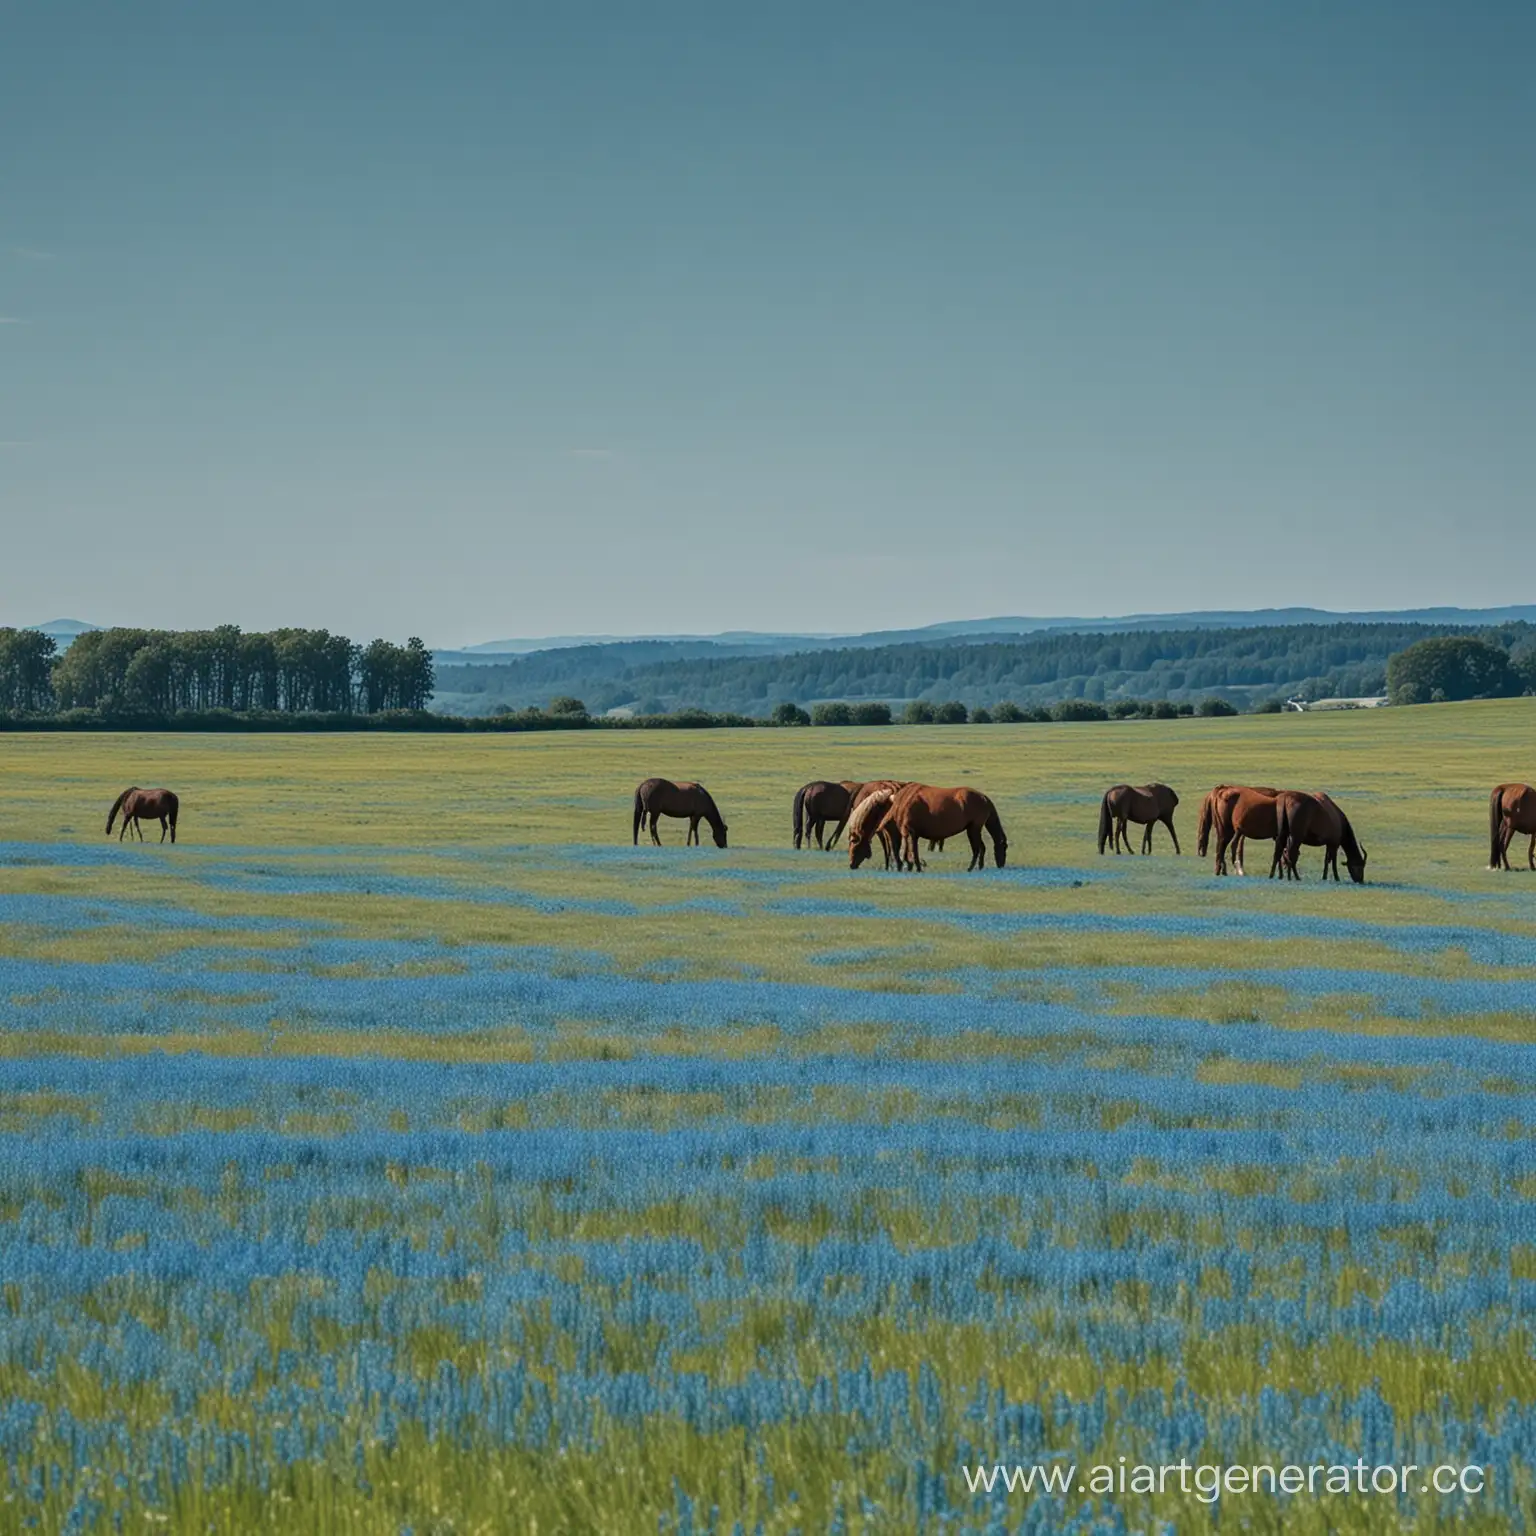 кони вдалеке пасутся на большом синем поле